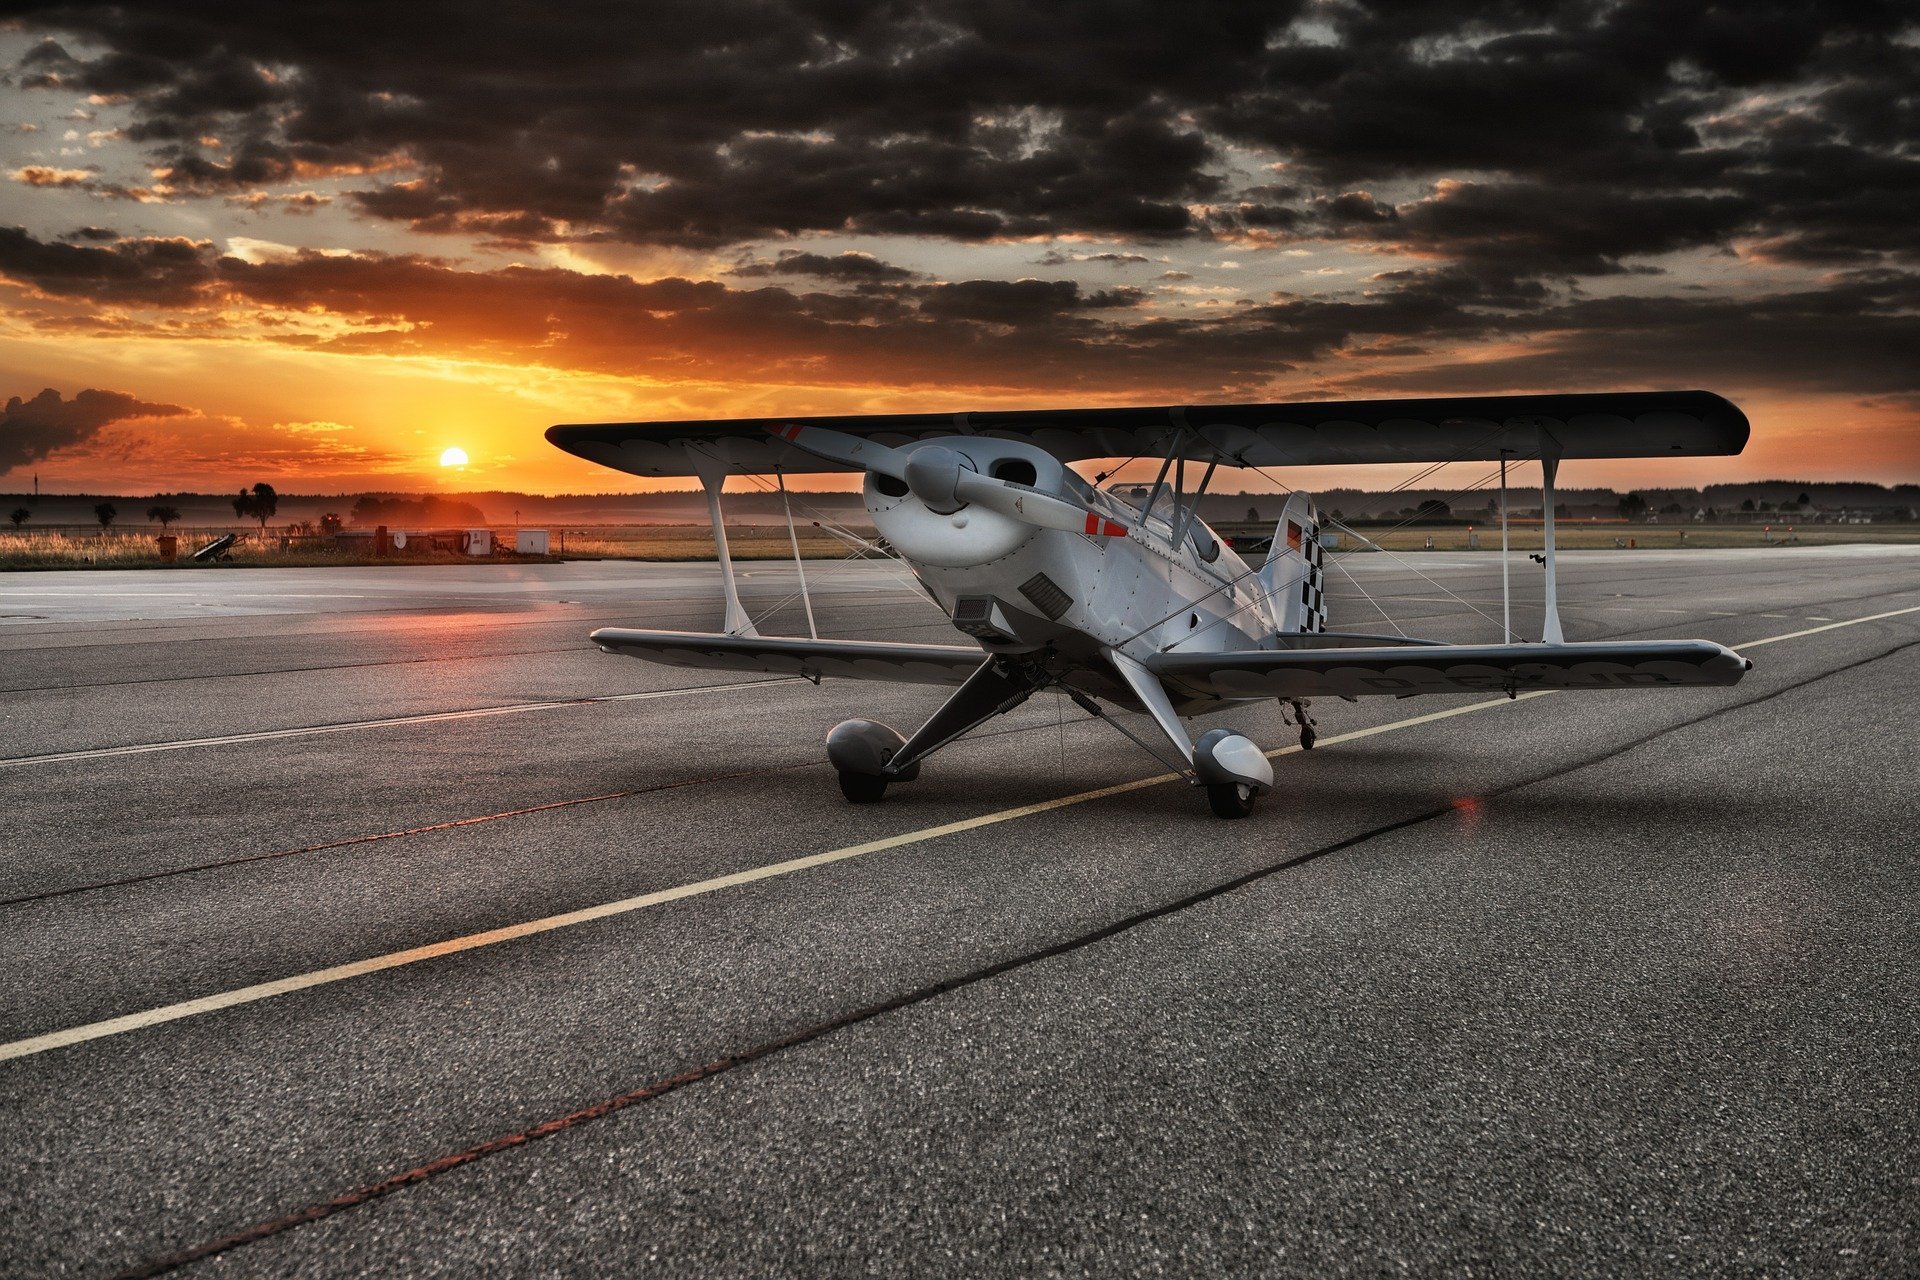 Aircraft at the airport runway | Source: Pixabay